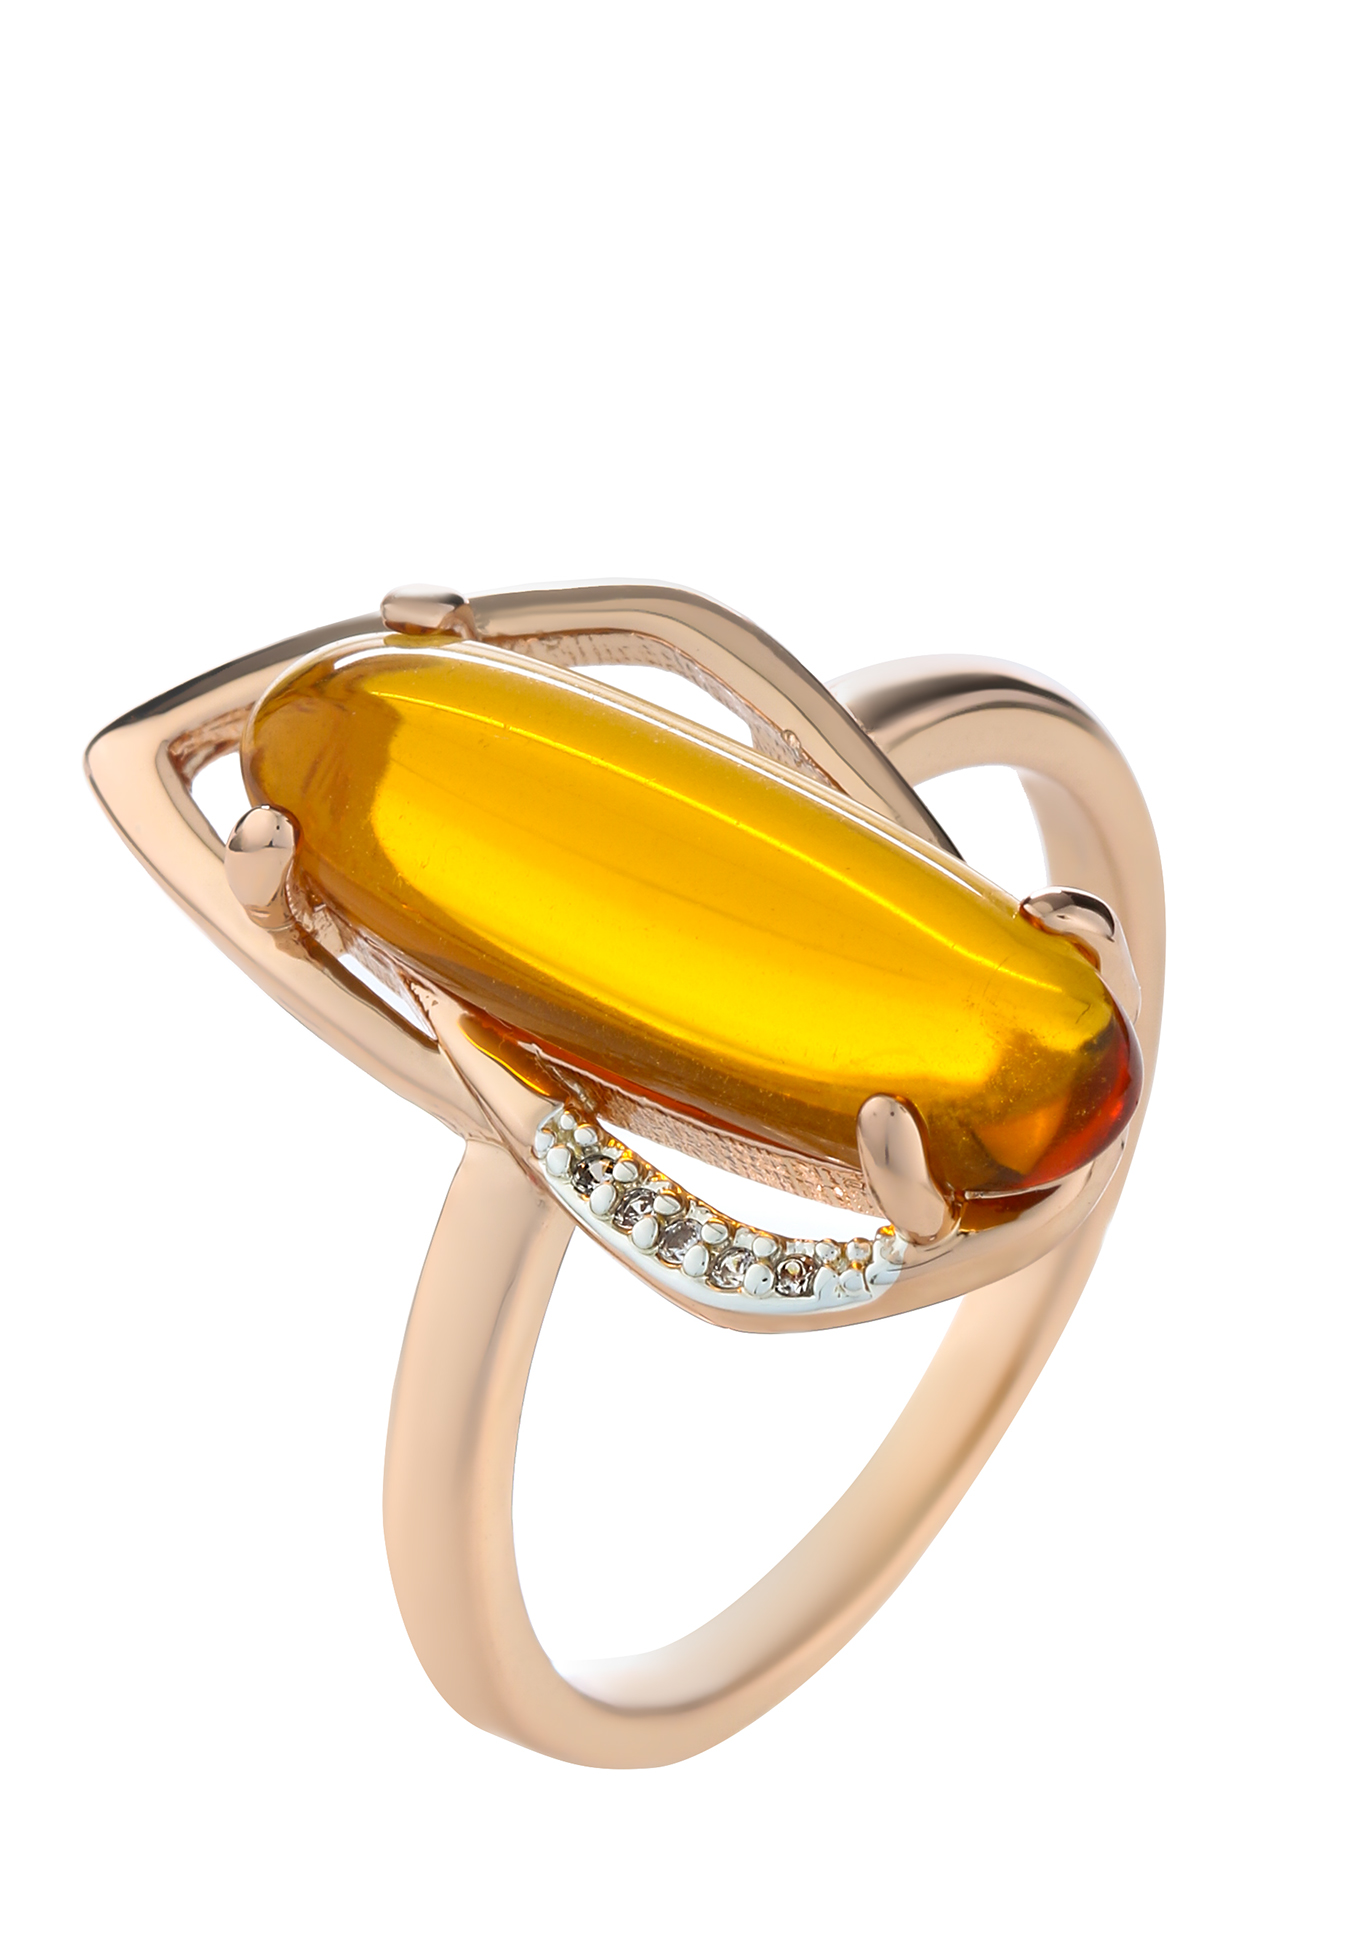 Кольцо "Янтарное сияние" Бриллианит Натюр, цвет оранжевый, размер 18